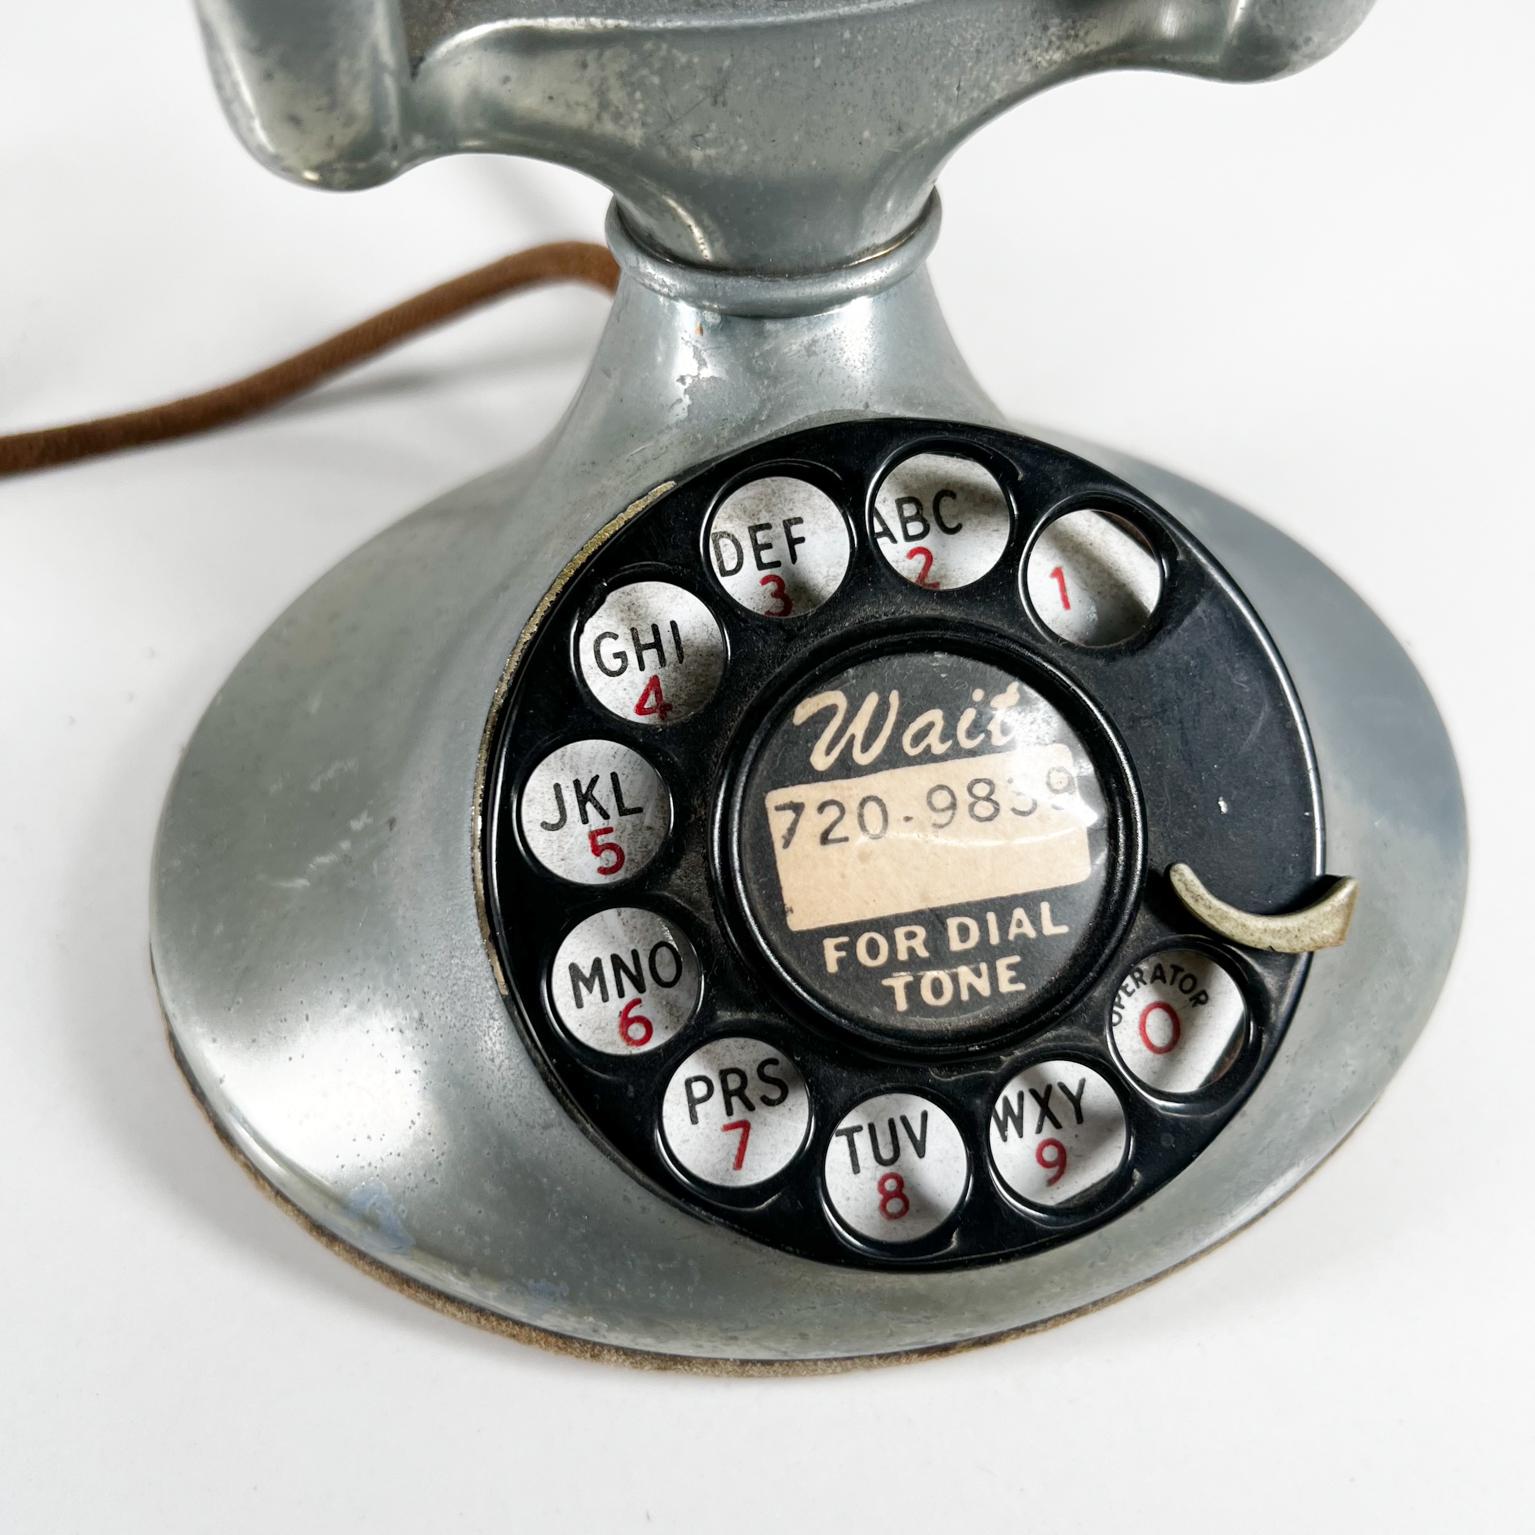 1940s telephone